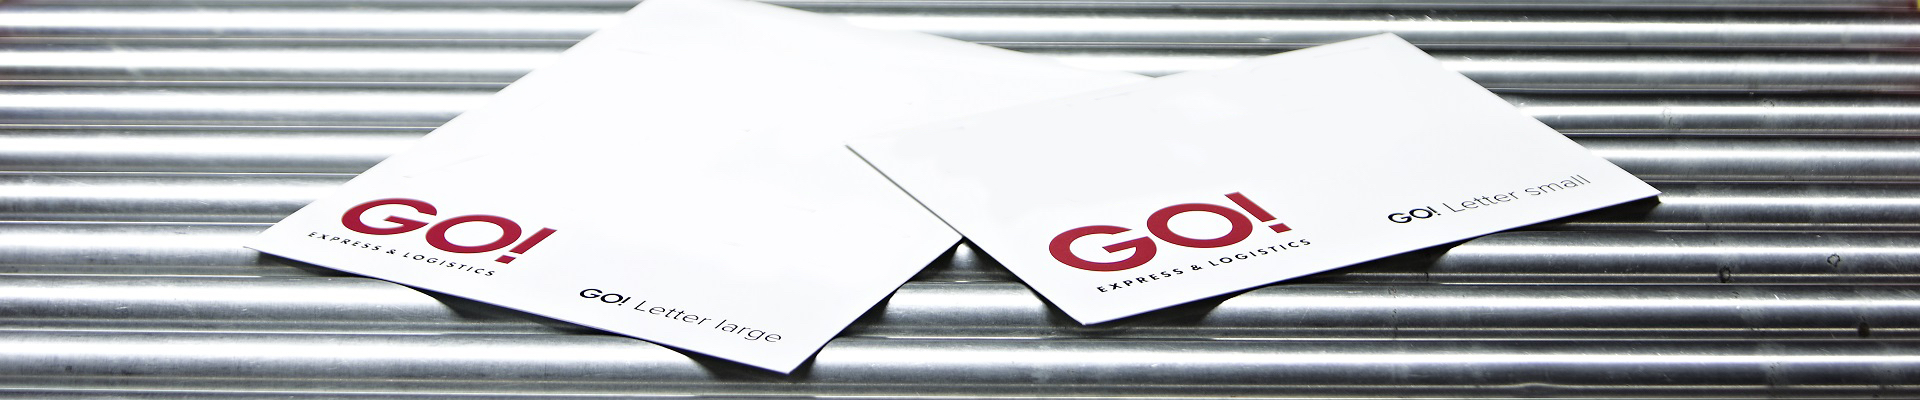 Zwei weiße GO! Letter liegen auf einem metallischen Fließband